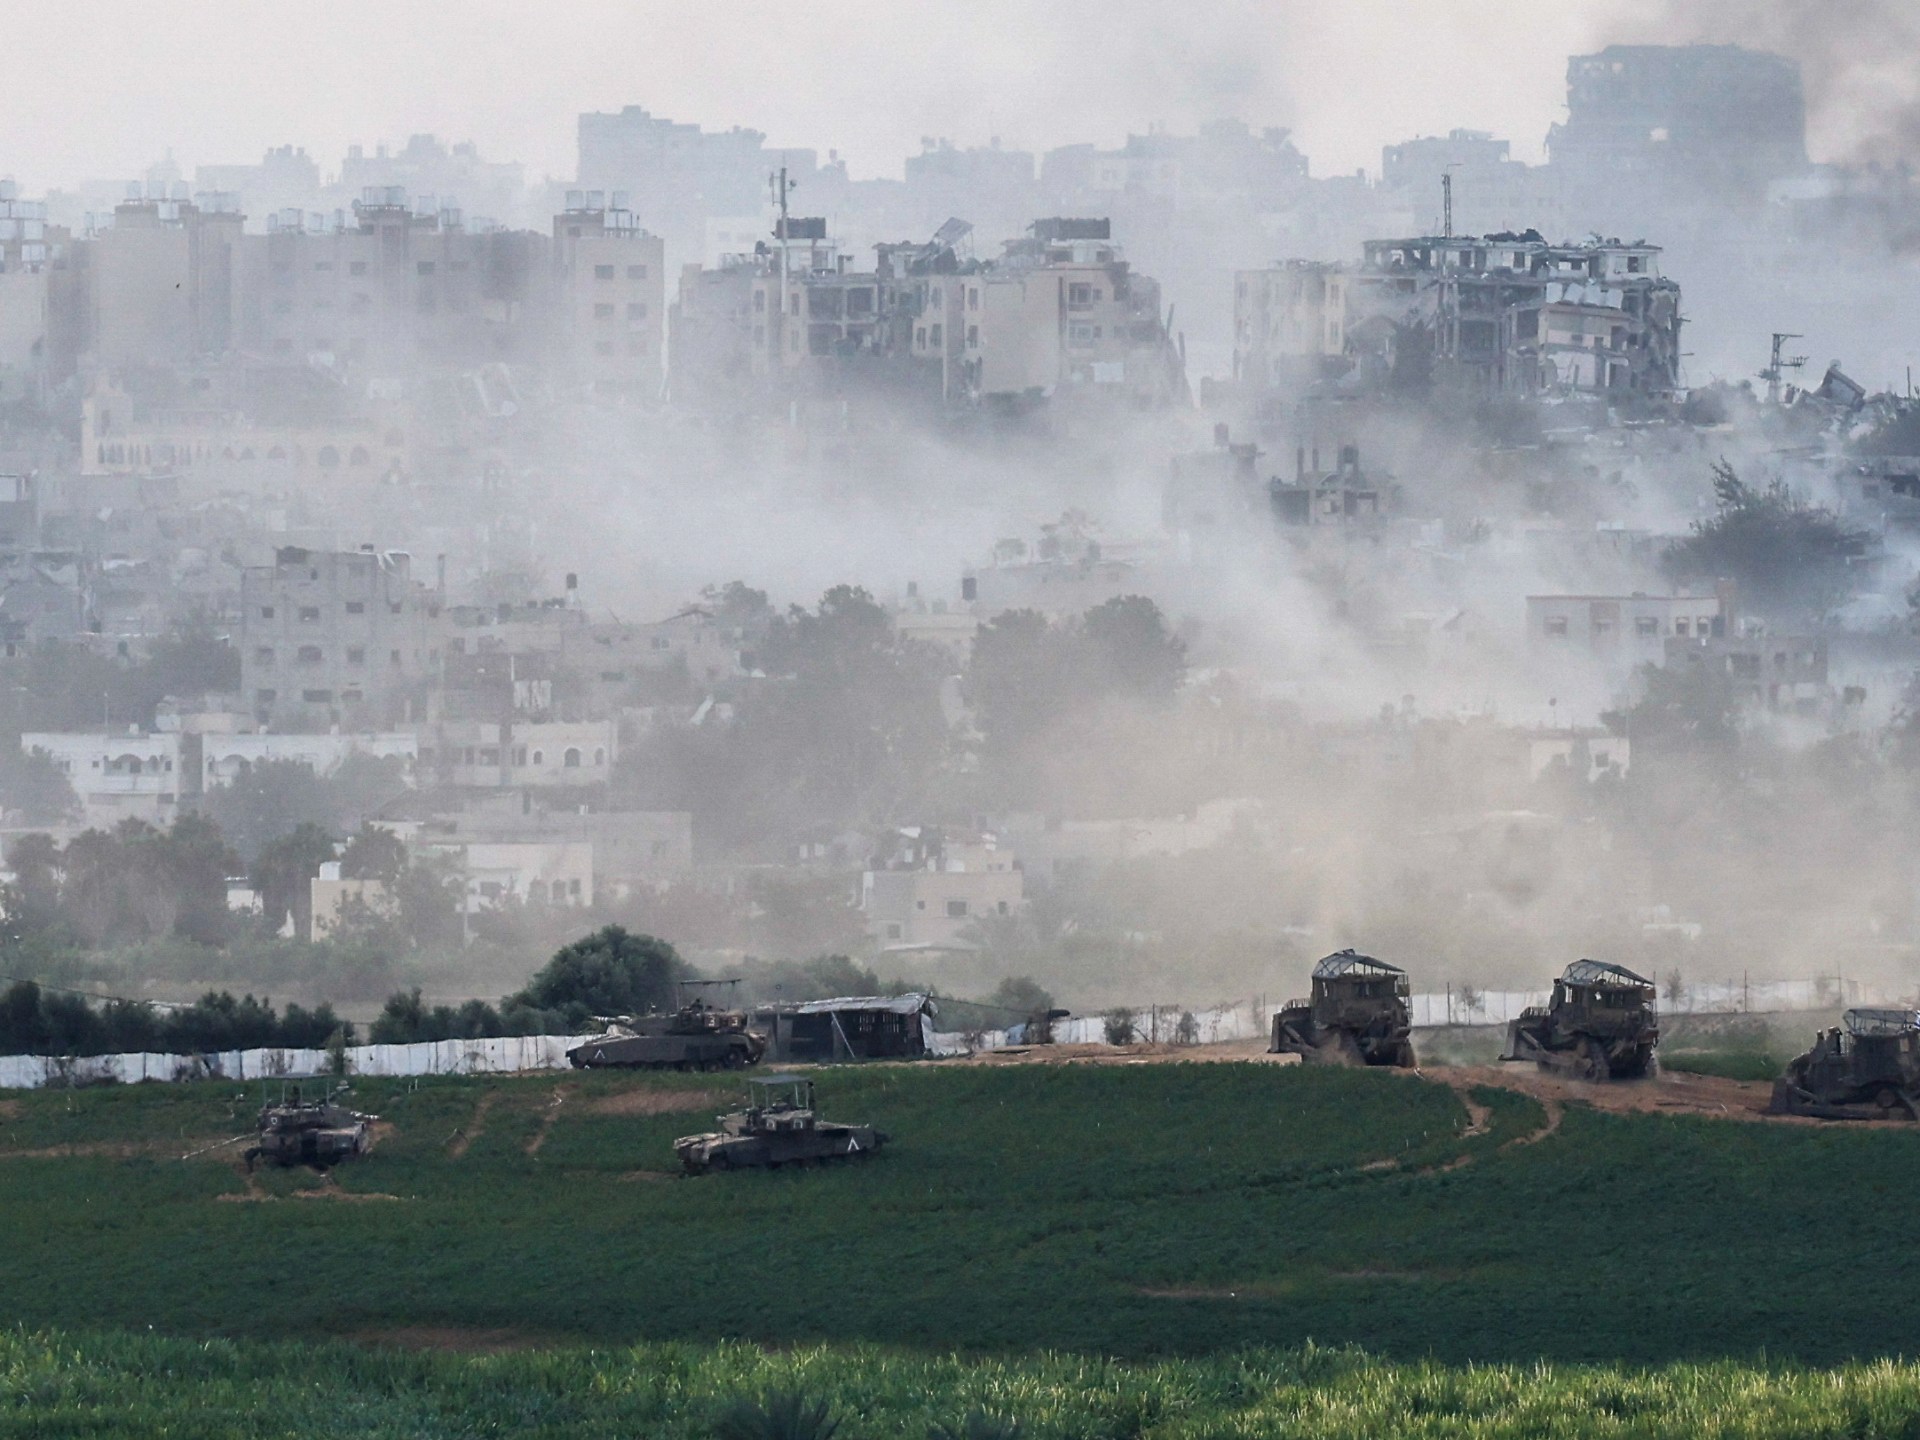 فايننشال تايمز: لهذه الأسباب تتوغل إسرائيل بشكل محدود في غزة | أخبار جولة الصحافة – البوكس نيوز